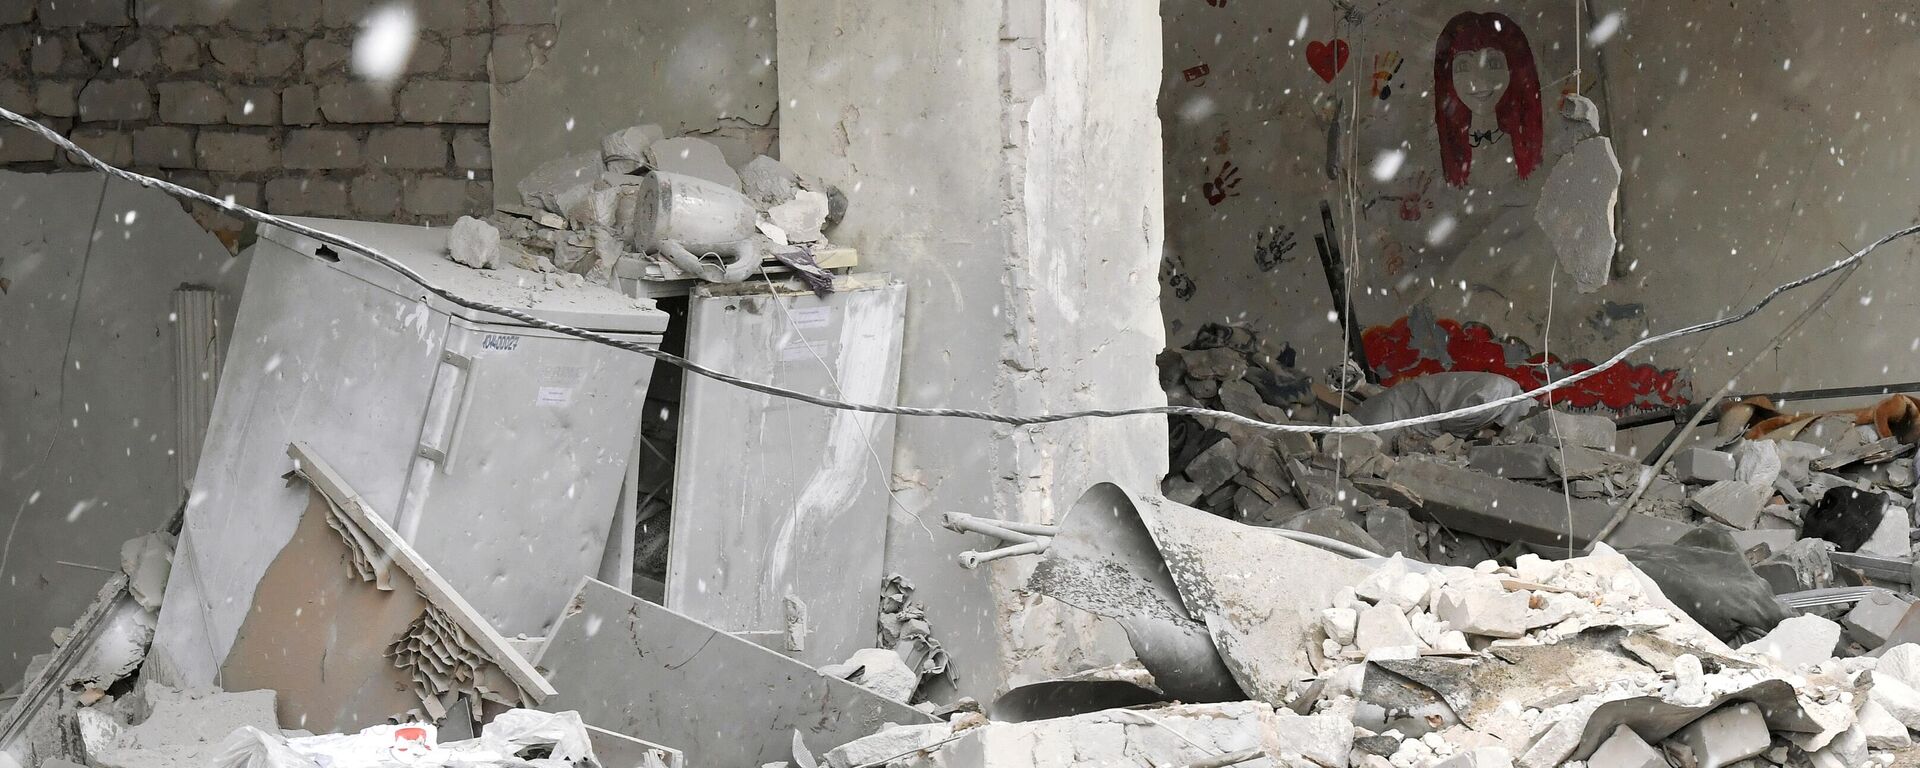 ウクライナ軍の「ハイマース」による攻撃で破壊された病室（ルガンスク人民共和国・ノボアイダル、29日） - Sputnik 日本, 1920, 30.01.2023